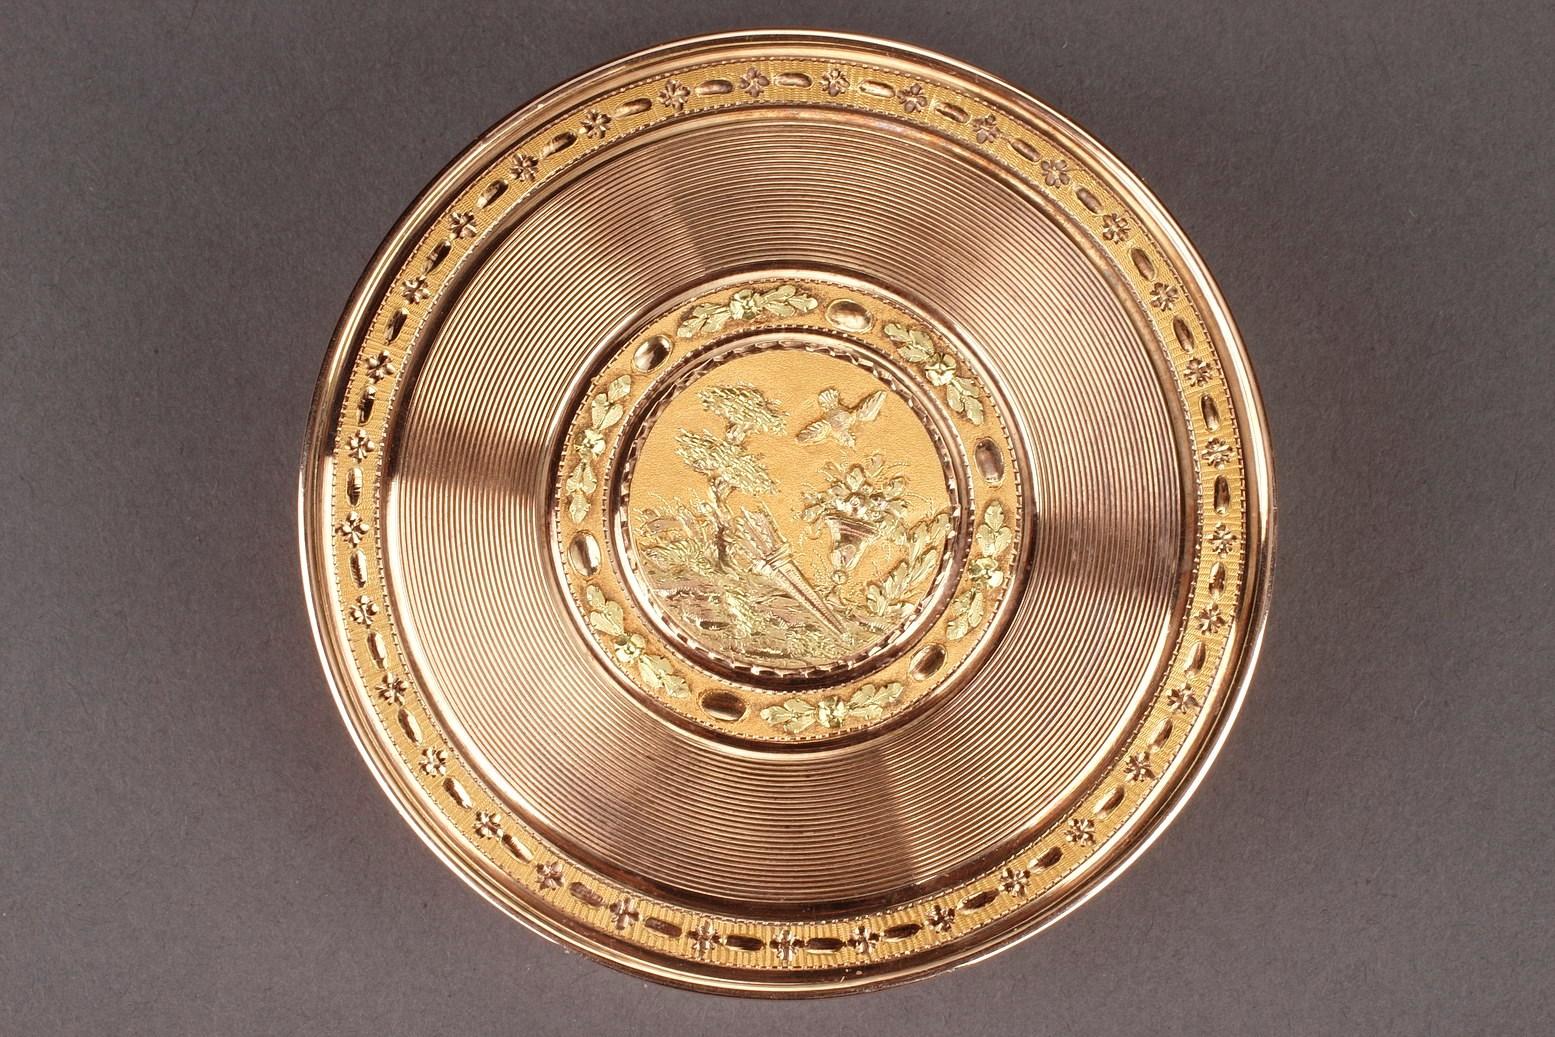 Große, runde Dose mit zwei Goldtönen. Der abnehmbare Deckel ist mit detaillierten, konzentrischen Linien und einem zentralen Medaillon verziert, das eine Taube darstellt, die über einen Blumenkorb und einen Köcher auf Amati-Goldgrund fliegt. Der